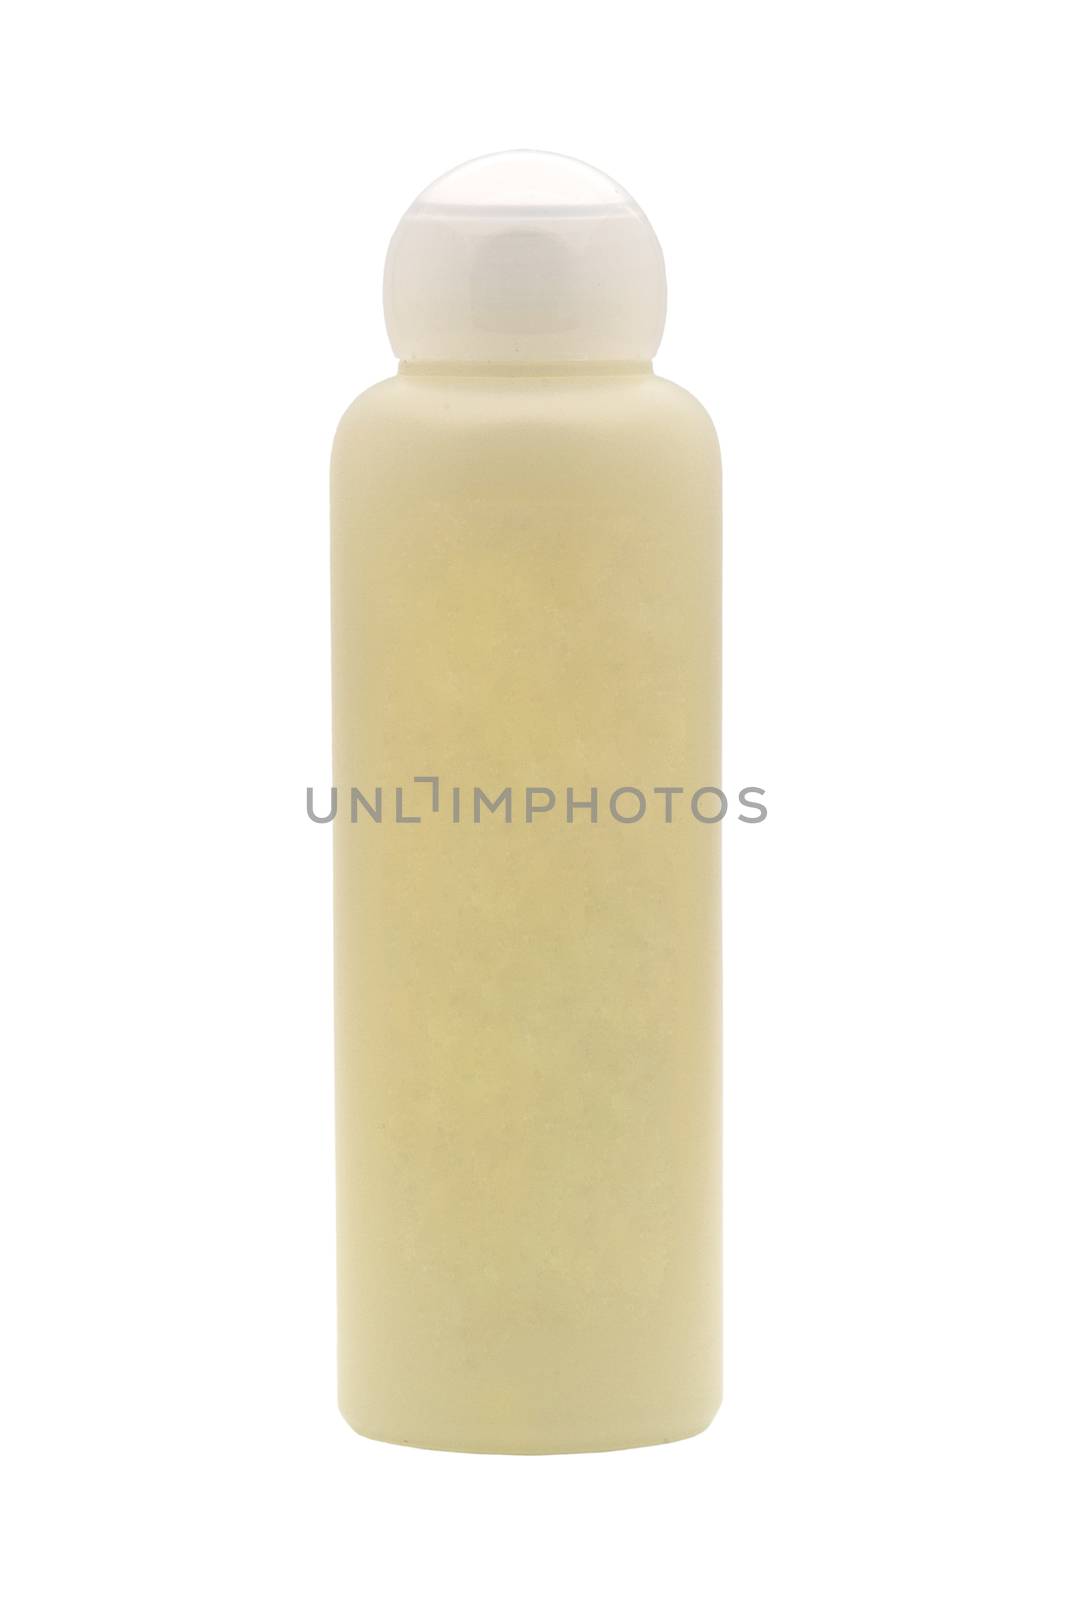 Lotion, cream bottle on white background